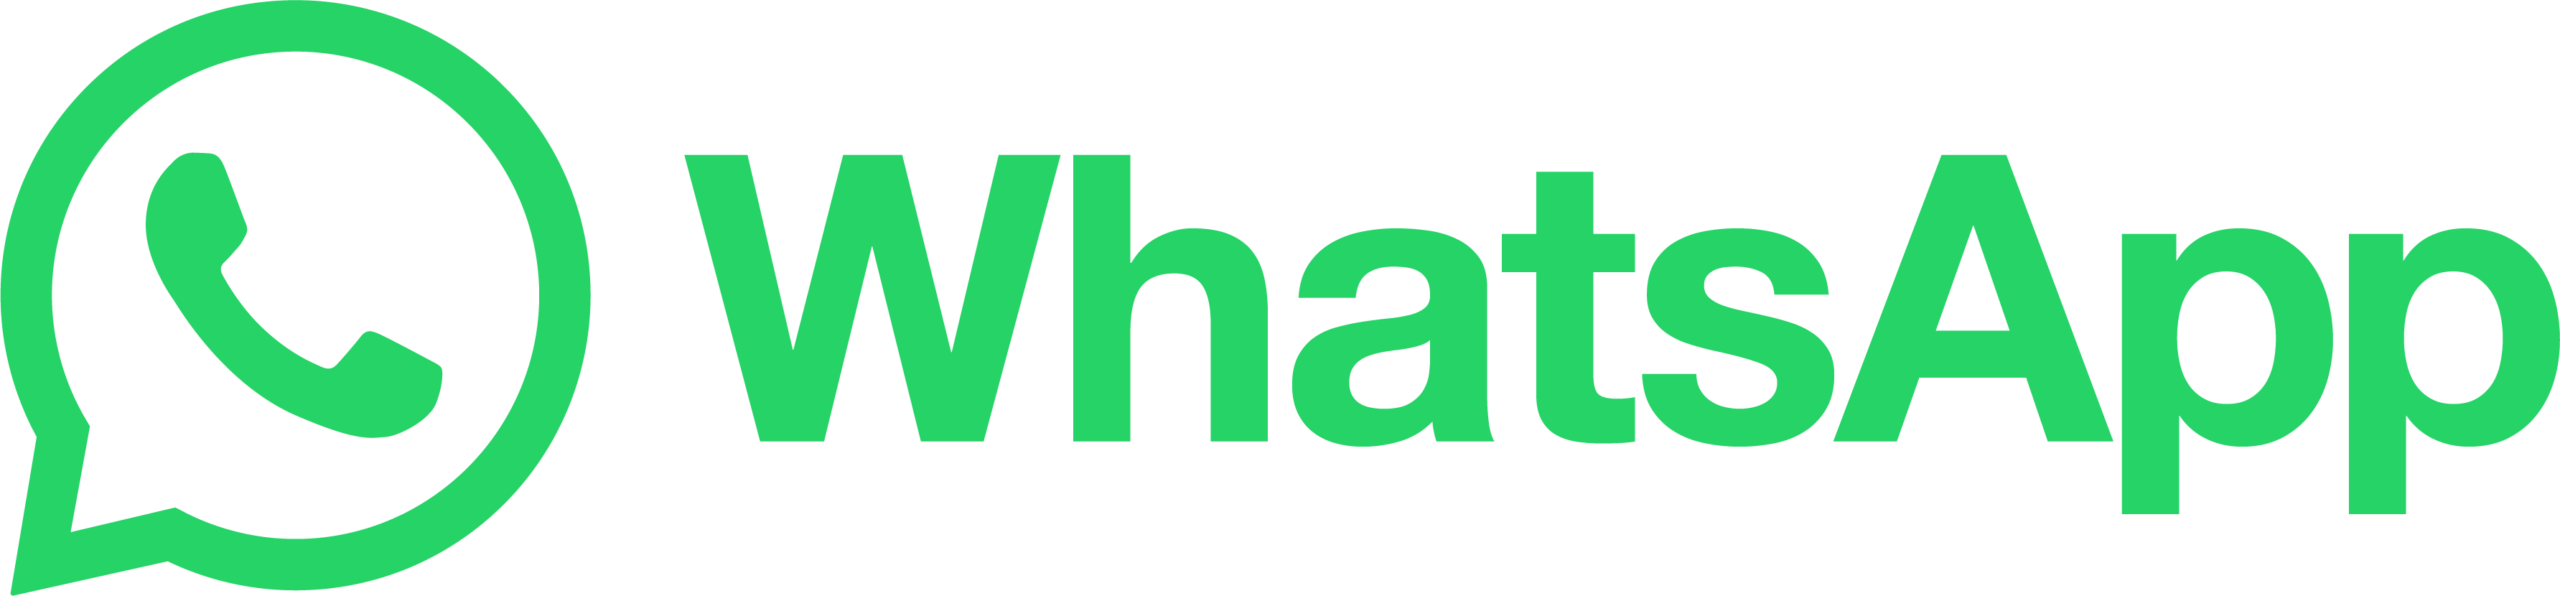 Whatsapp Logo 2 Stegplattenversand.de - Das Original®